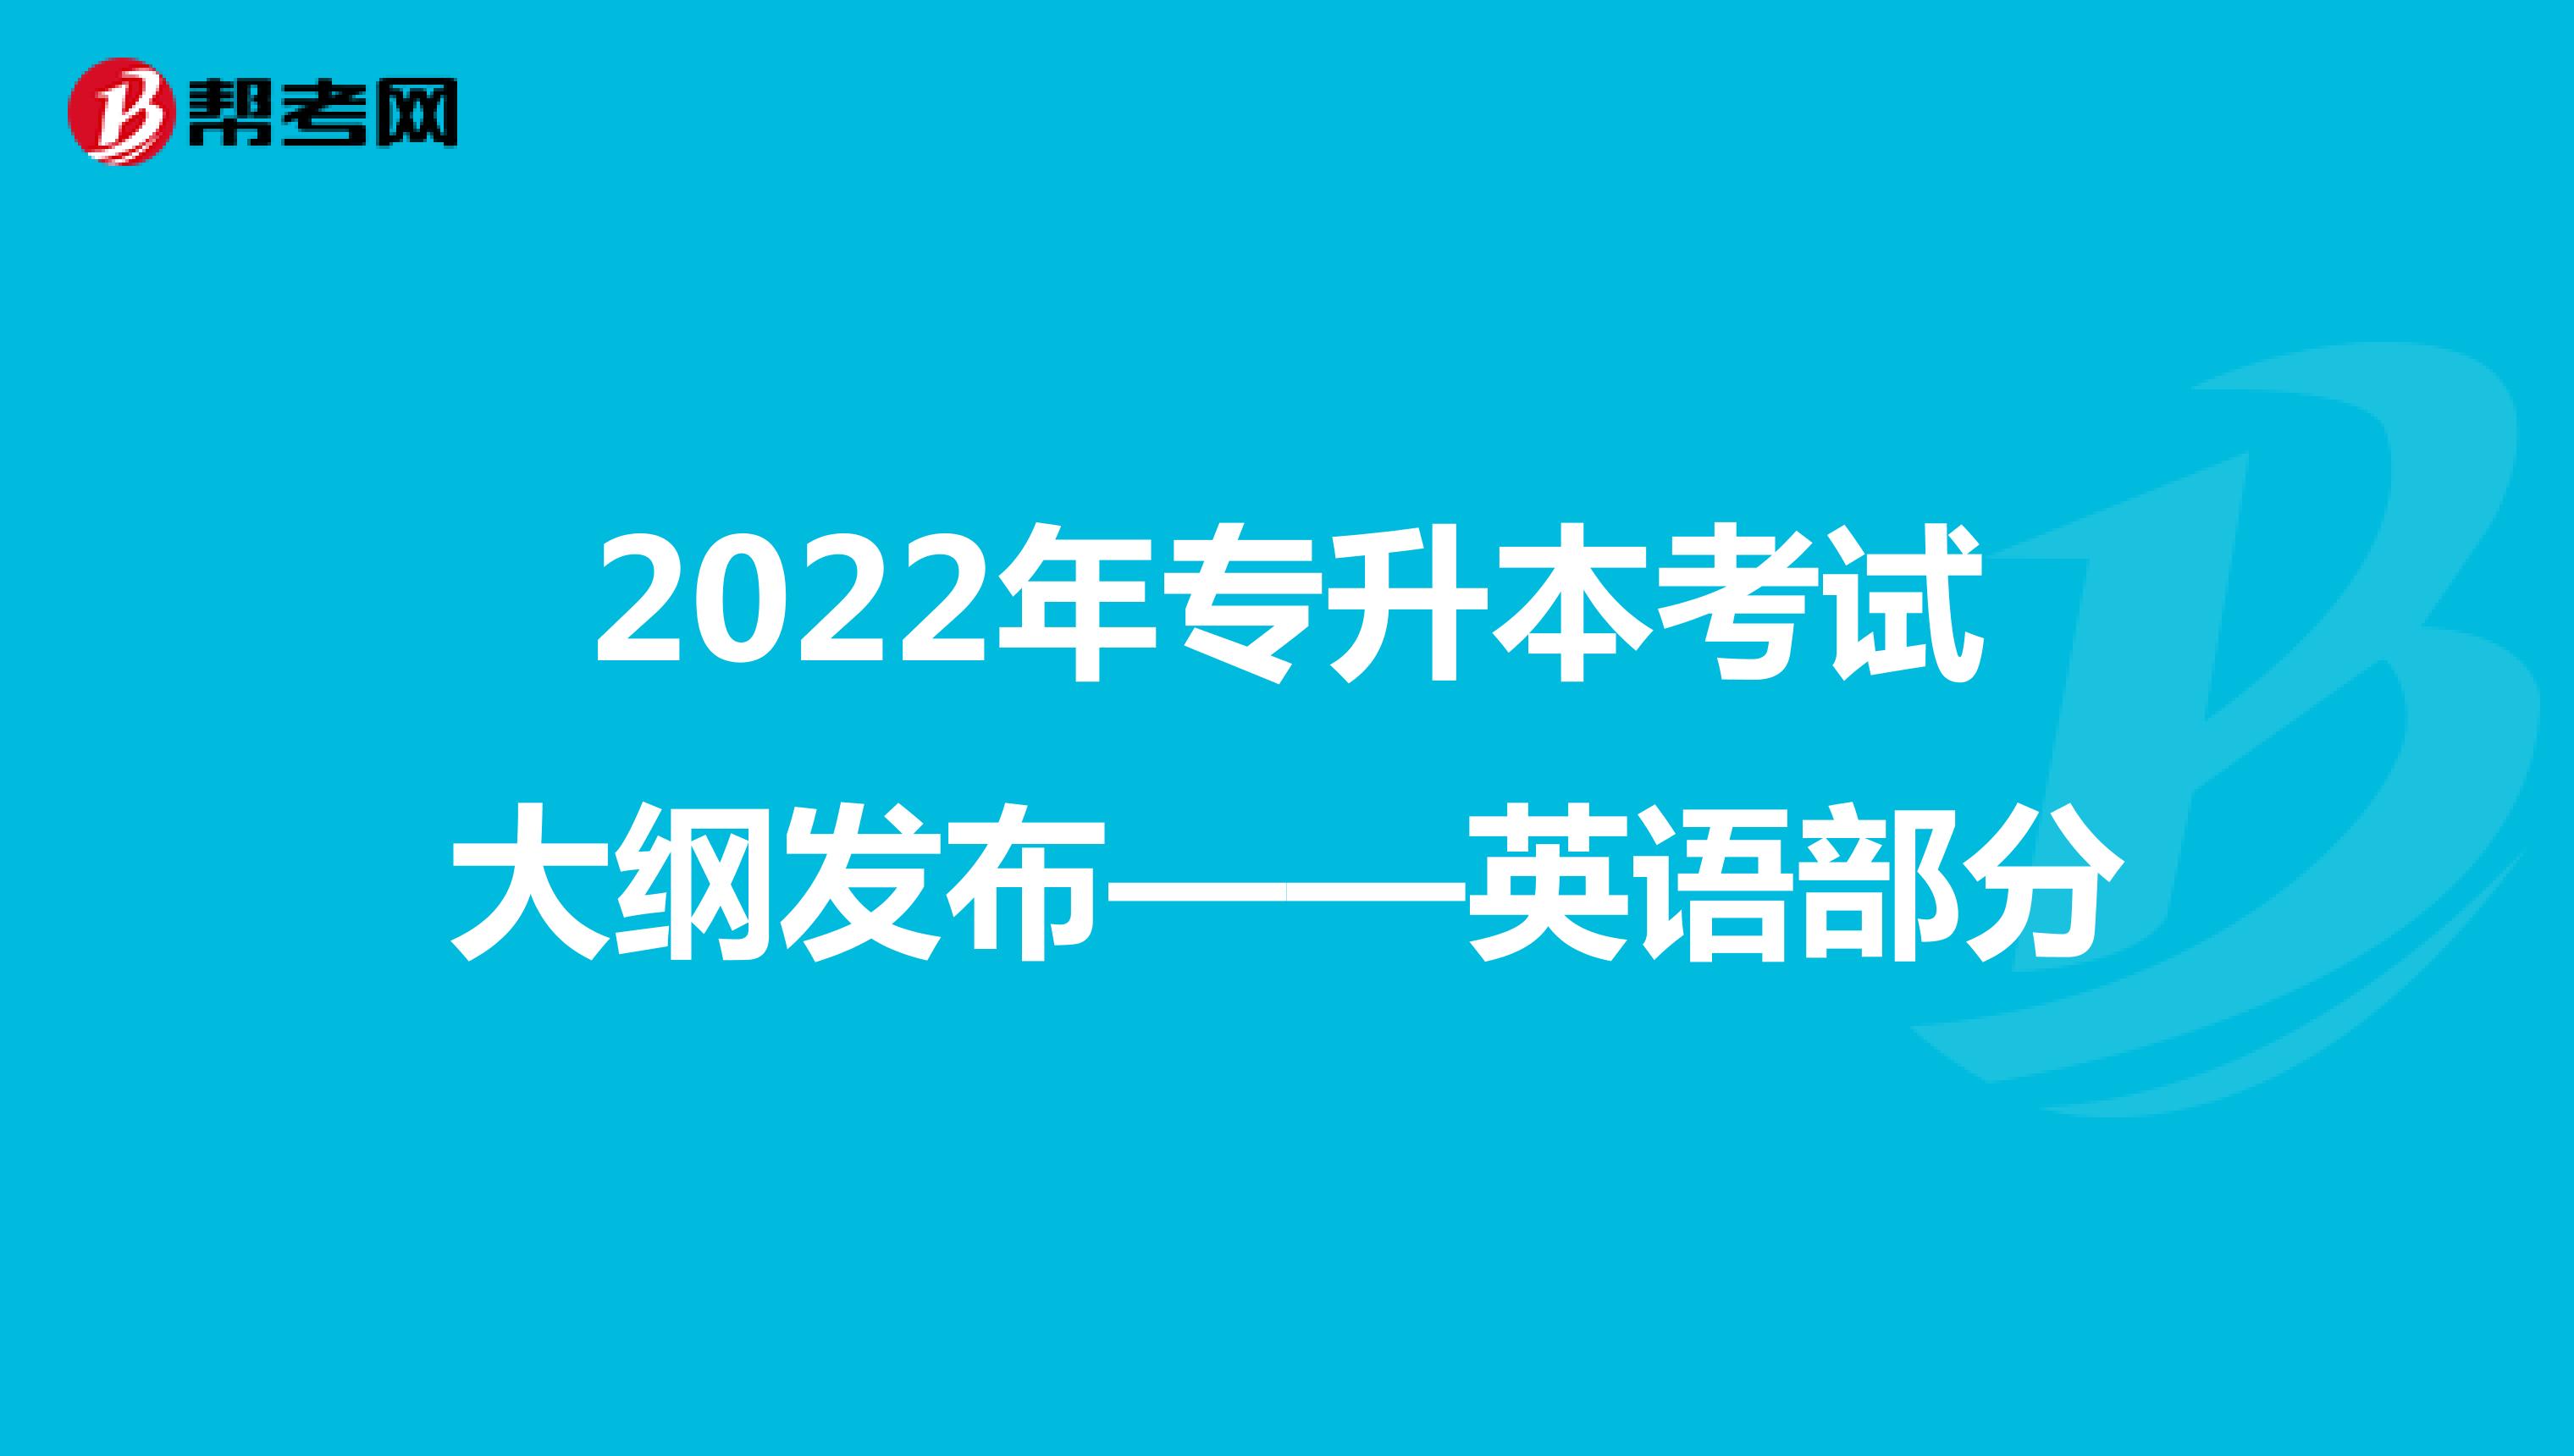 2022年专升本考试大纲发布——英语部分